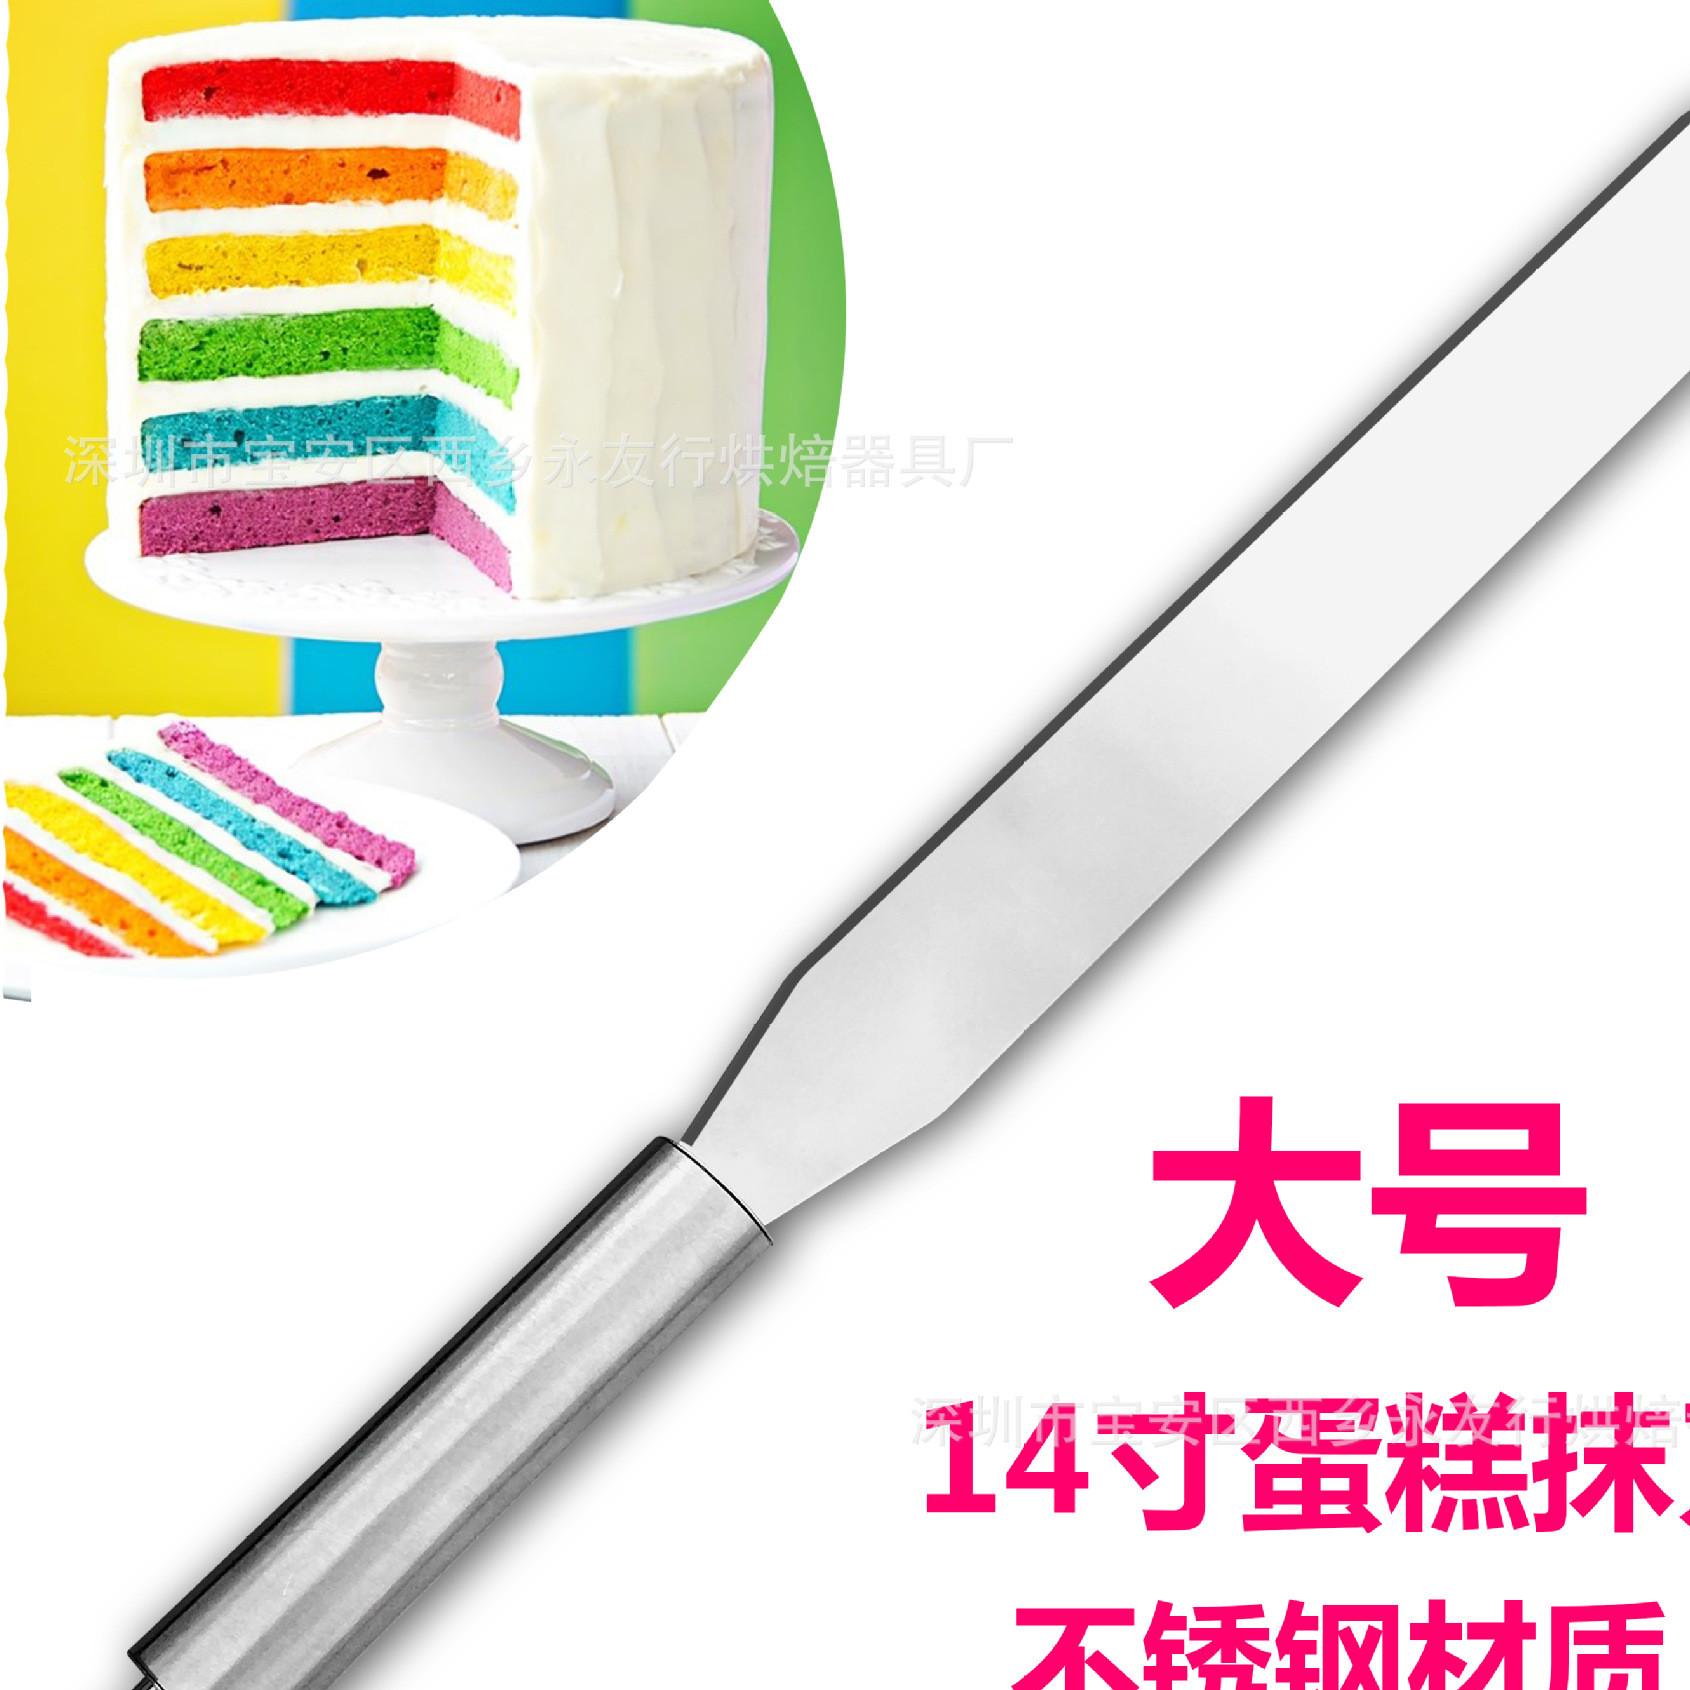 14寸大号蛋糕抹刀 不锈钢奶油刮刀 实用蛋糕常备用具 烘焙工具刀